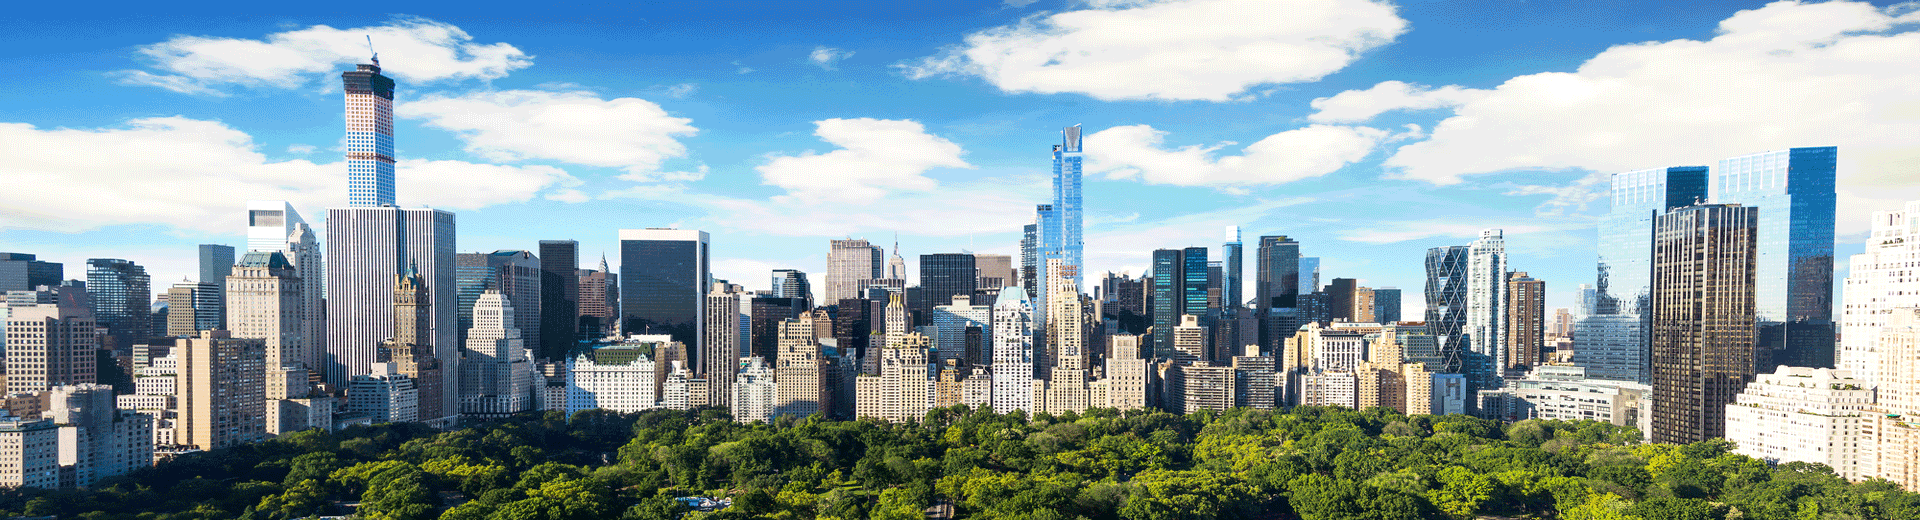 טיסות לניו יורק – השכונות של העיר